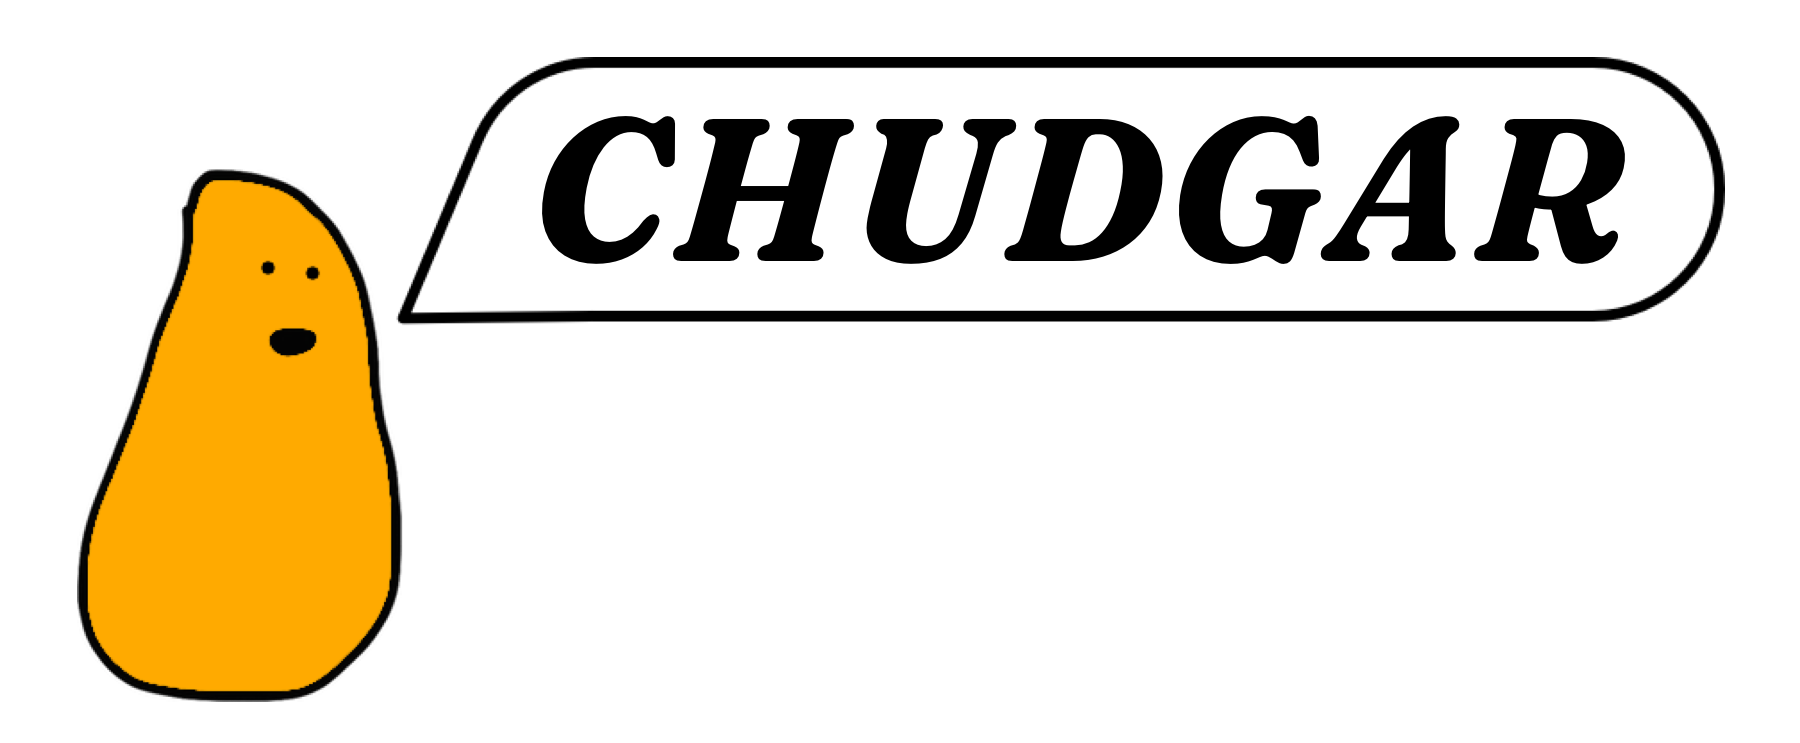 Ash Chudgar